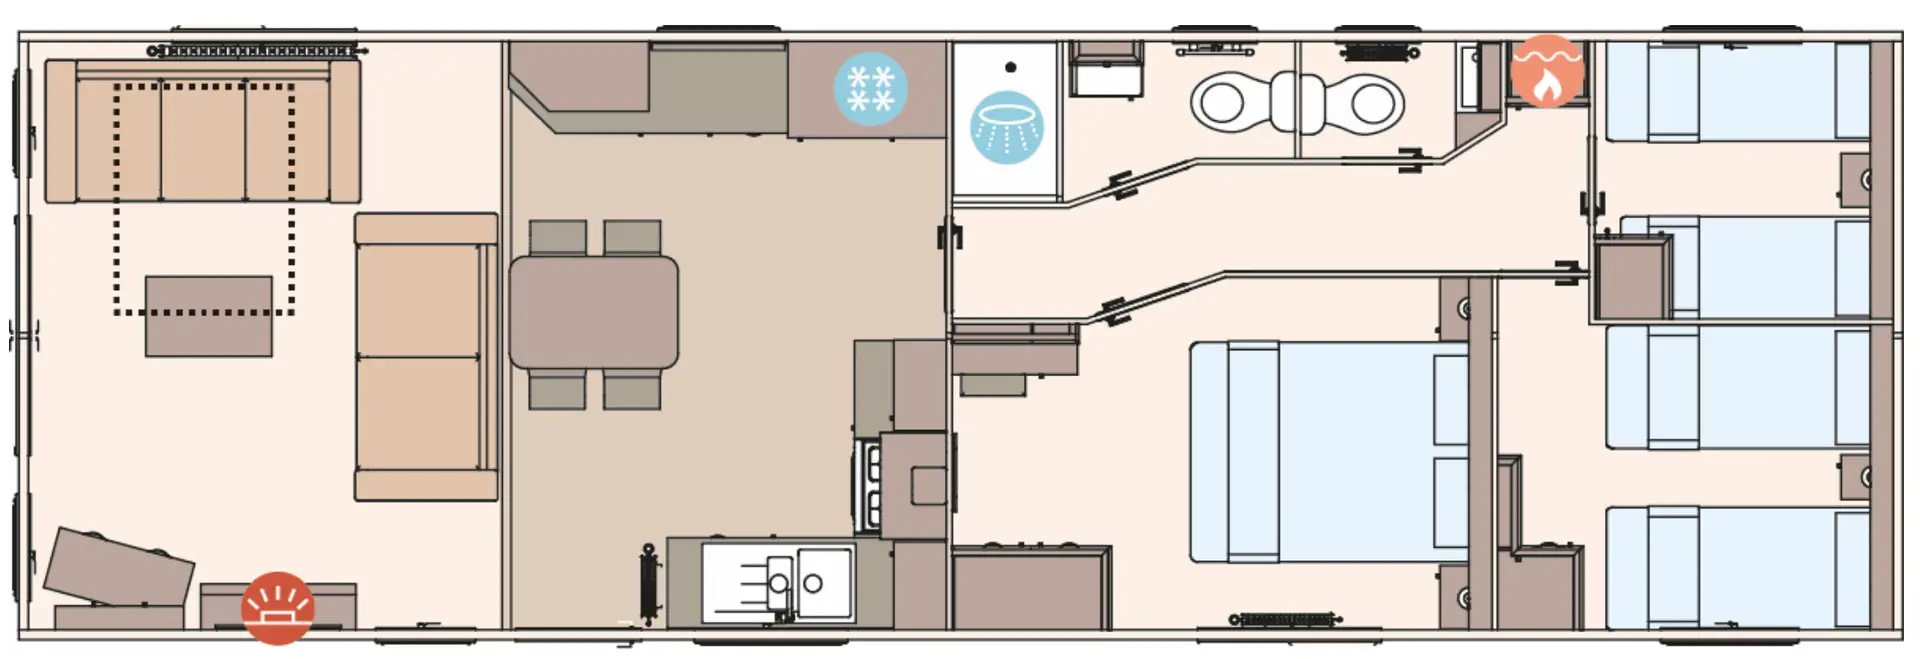 40x13 3 Bedroom Floor Plan